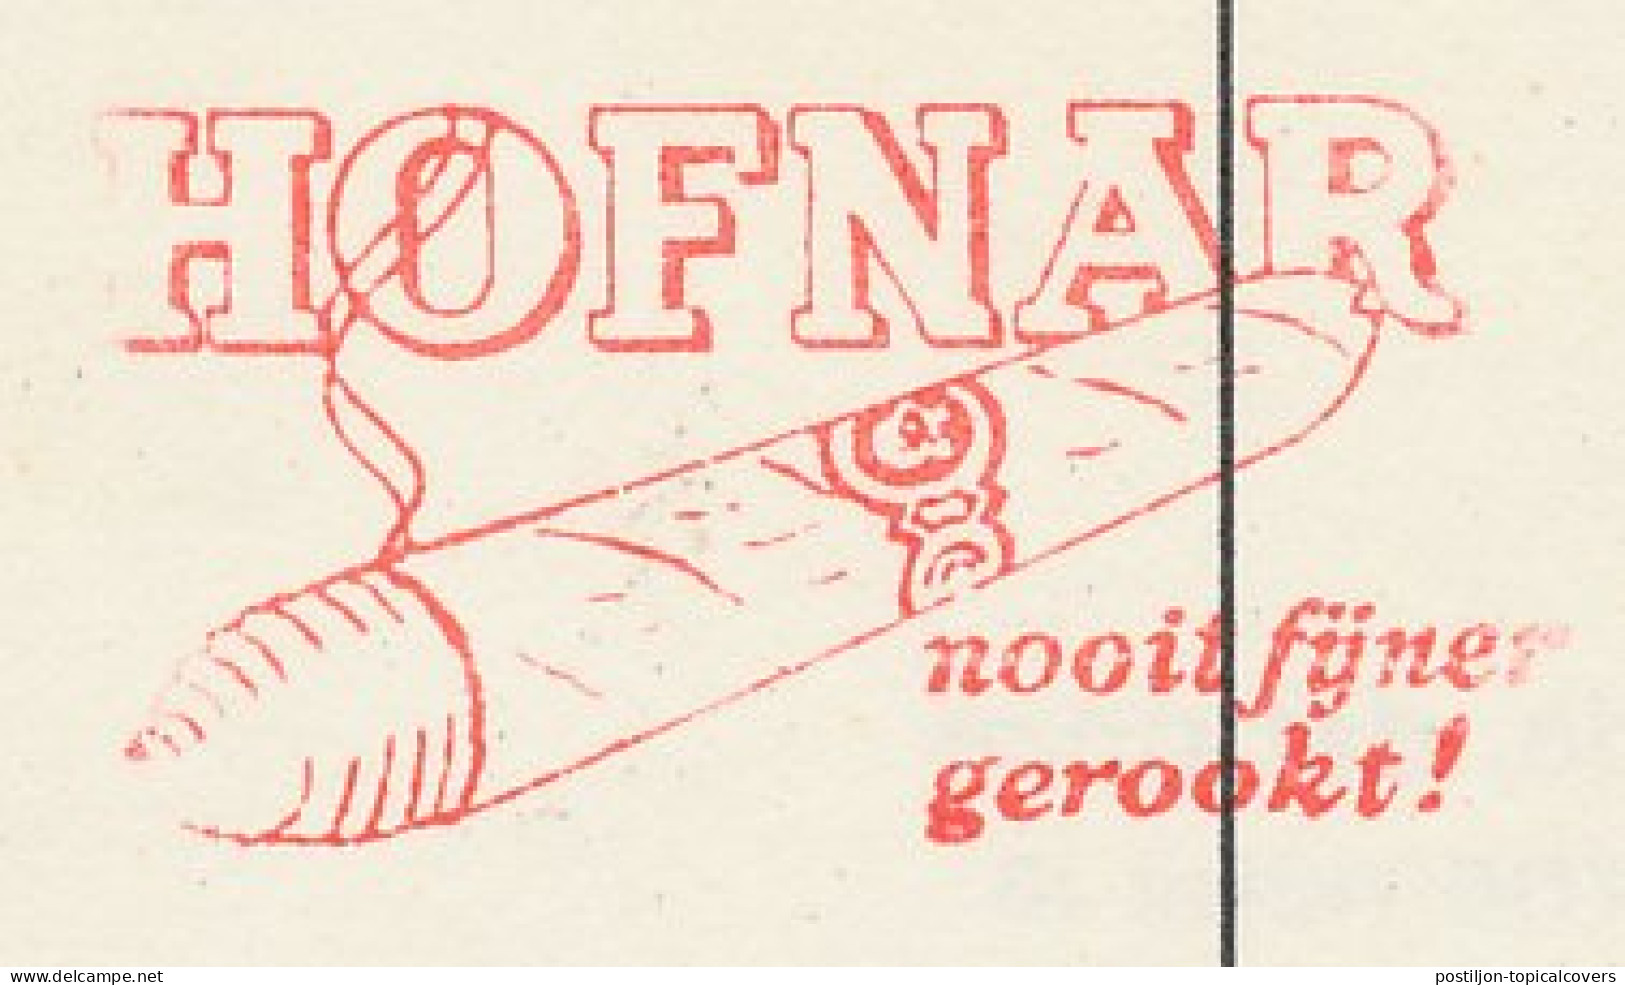 Meter Card Netherlands 1974 Cigar - Hofnar - Valkenswaard - Tobacco